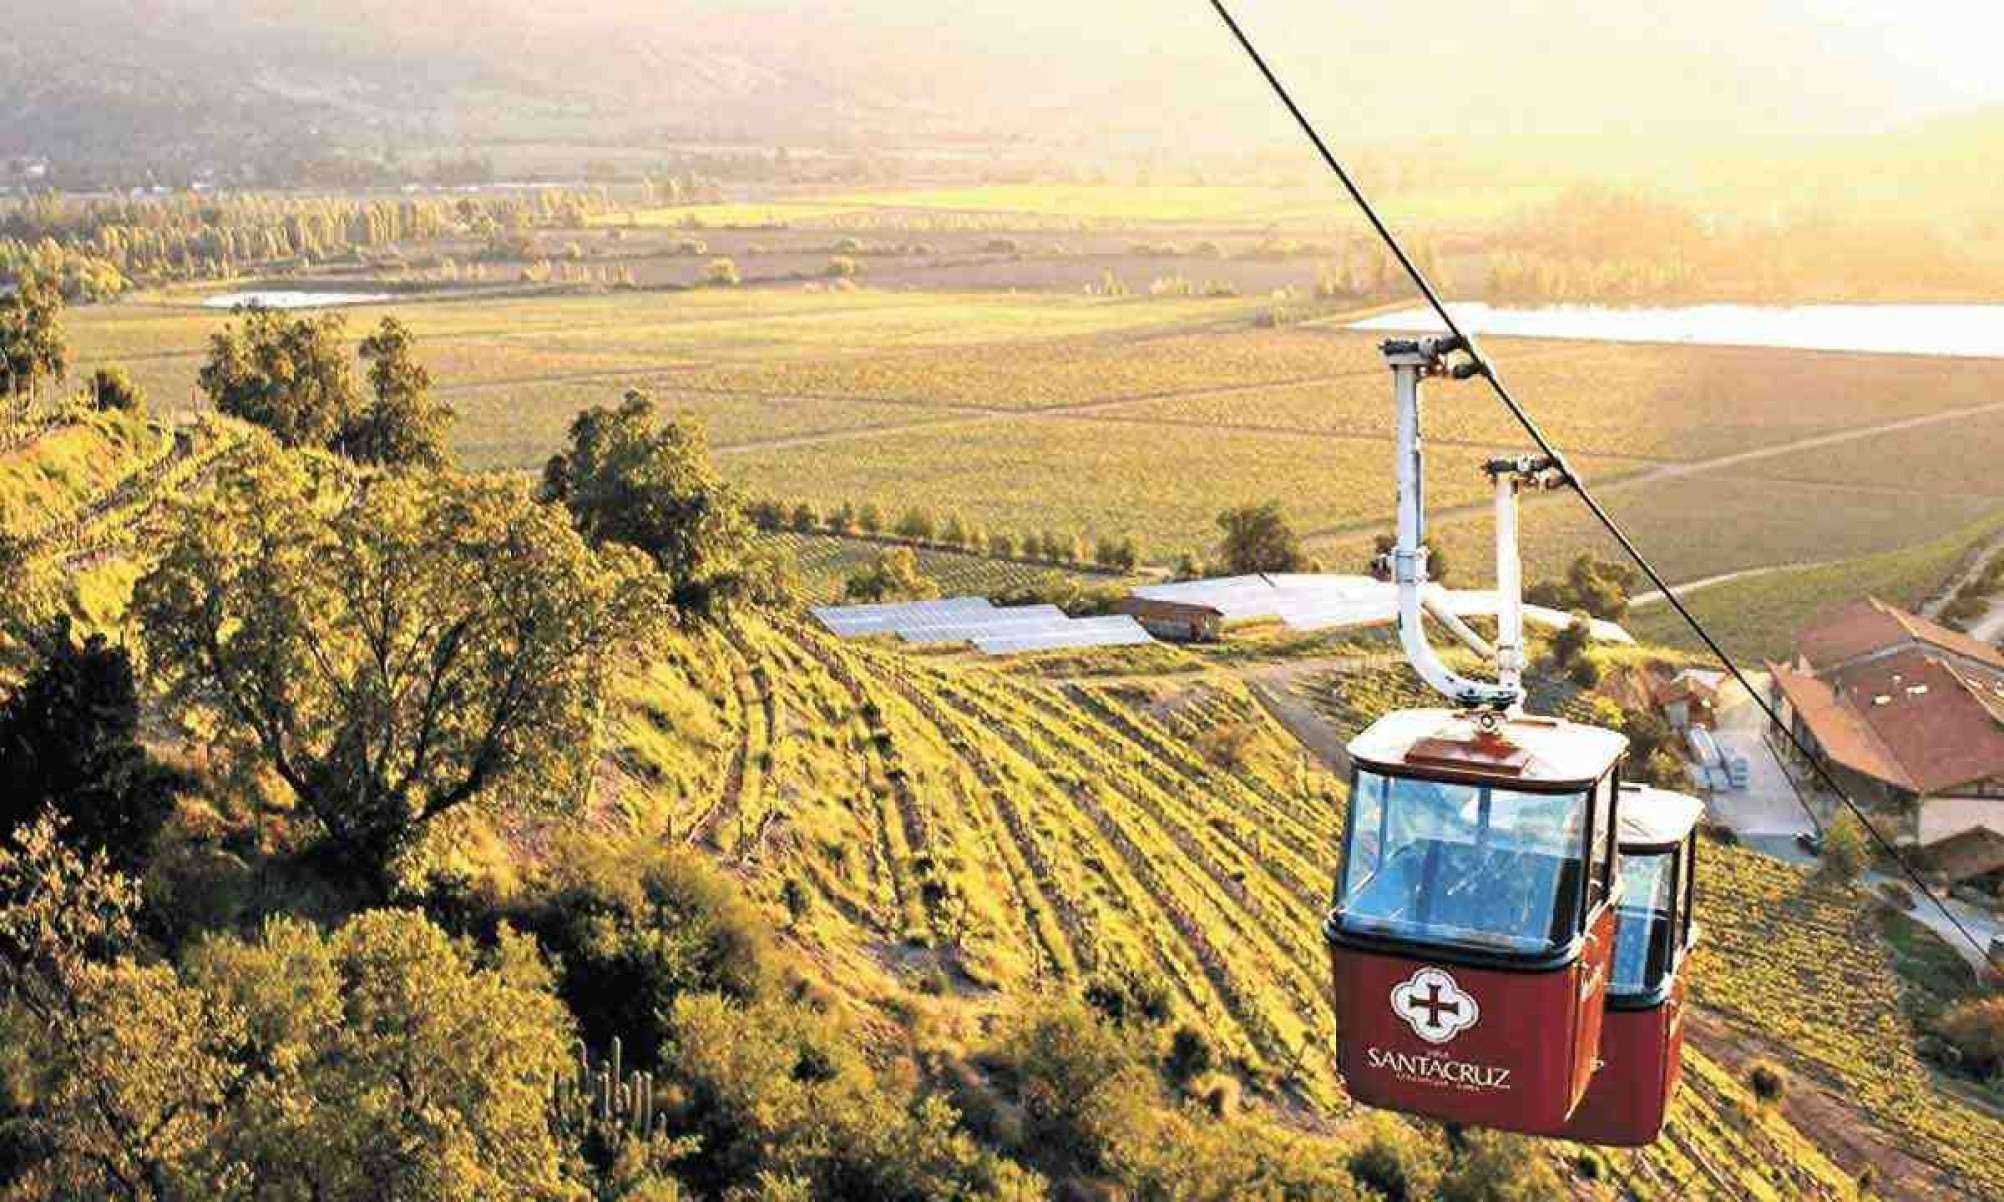  Passeio de teleférico na Viña Santa Cruz, uma das vinícolas mais icônicas da região do Vale do Colchagua